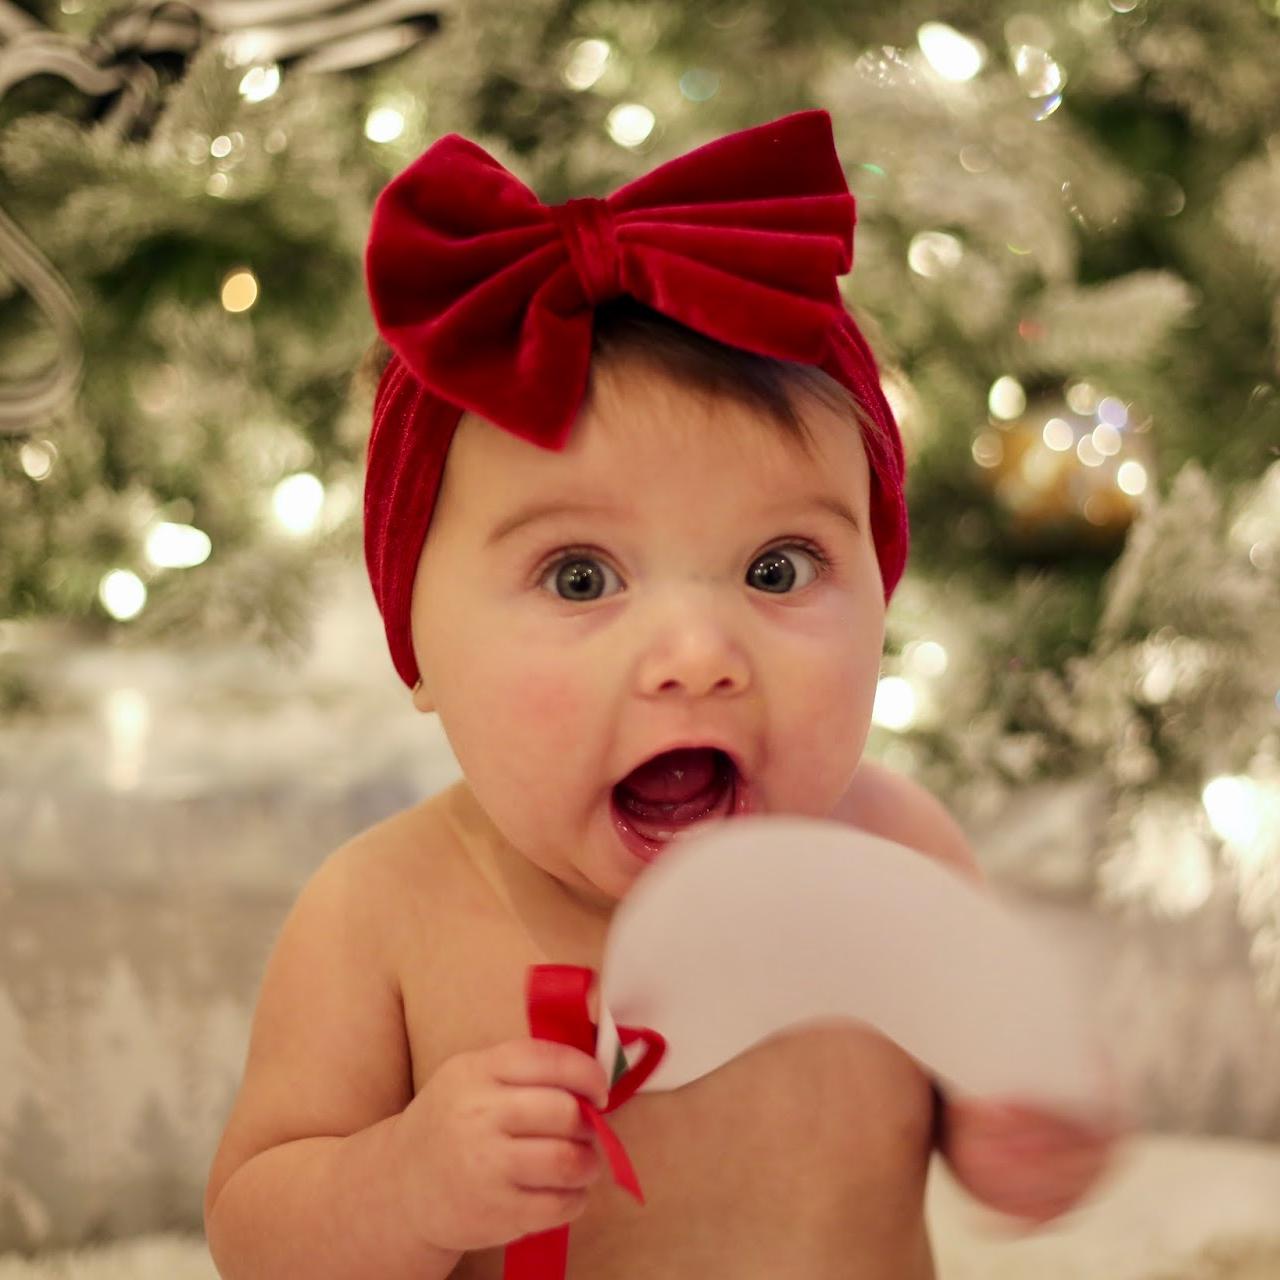 Baby BOOM astrology: Γιατί είναι τέλειο να έχεις κόρη τοξότη!